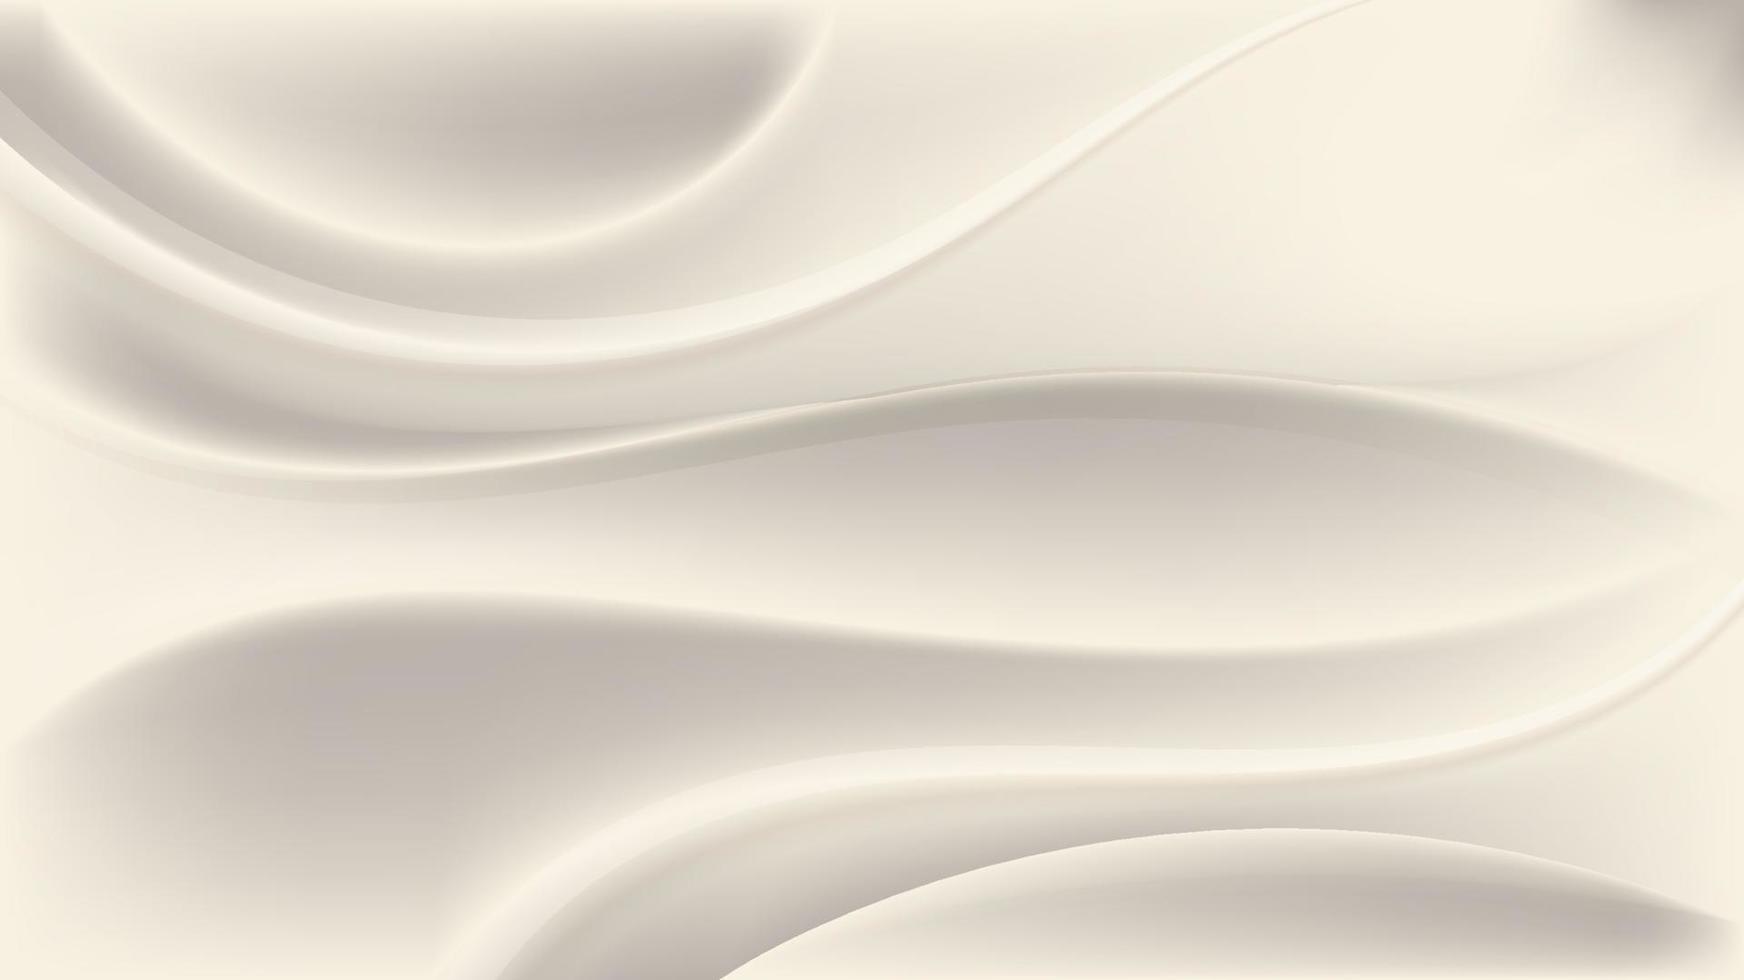 abstrakte elegante 3D-Weißgoldwellenformen und -linien auf sauberem Luxushintergrund vektor